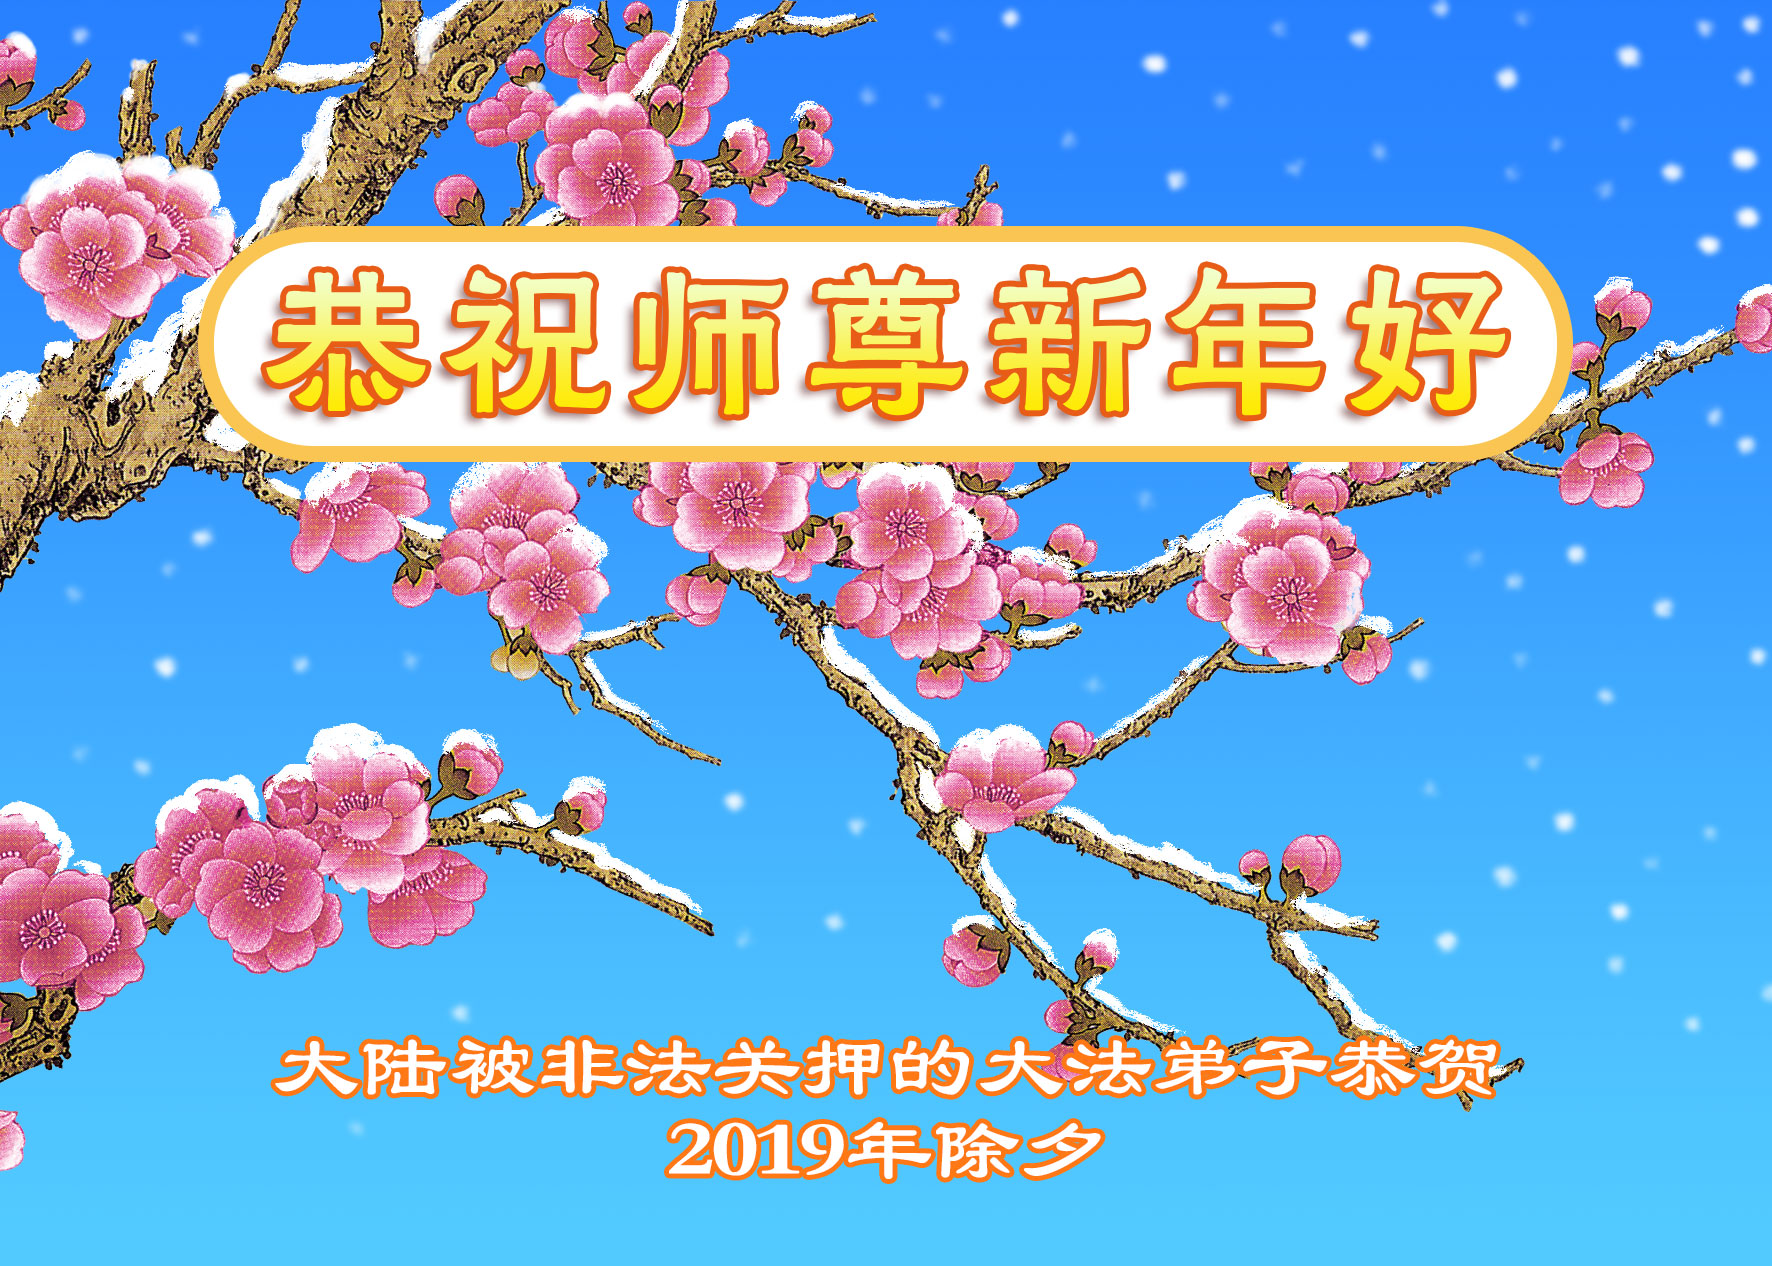 Image for article Avec bienveillance, toucher les cœurs et éveiller les âmes perdues - Les pratiquants de Falun Dafa emprisonnés souhaitent respectueusement à Maître Li Hongzhi un bon Nouvel An chinois !